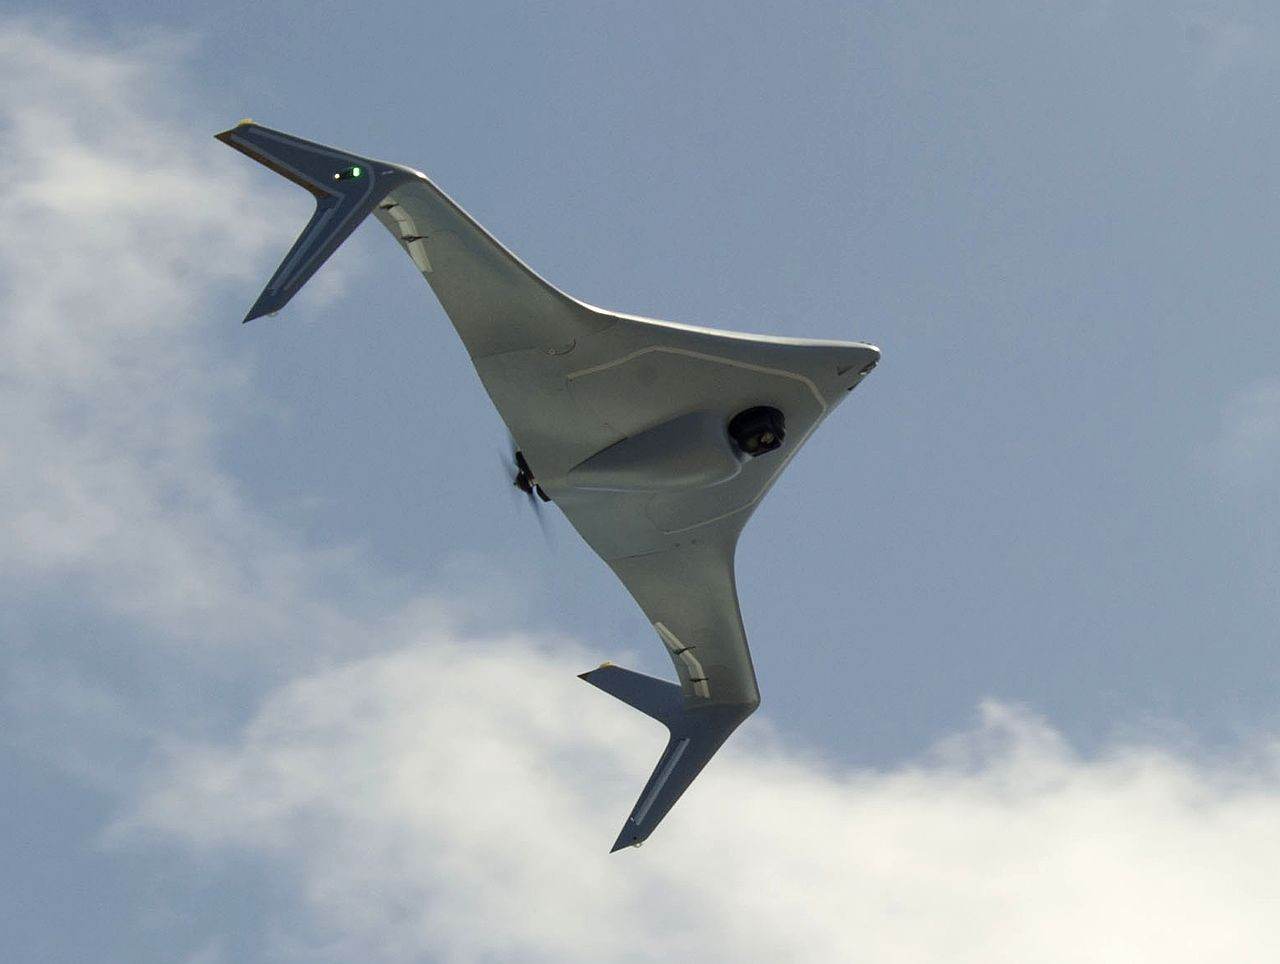 A Northrop Grumman sokoldalú drónja, a Bat (denevér). Forrás: Wikipédia